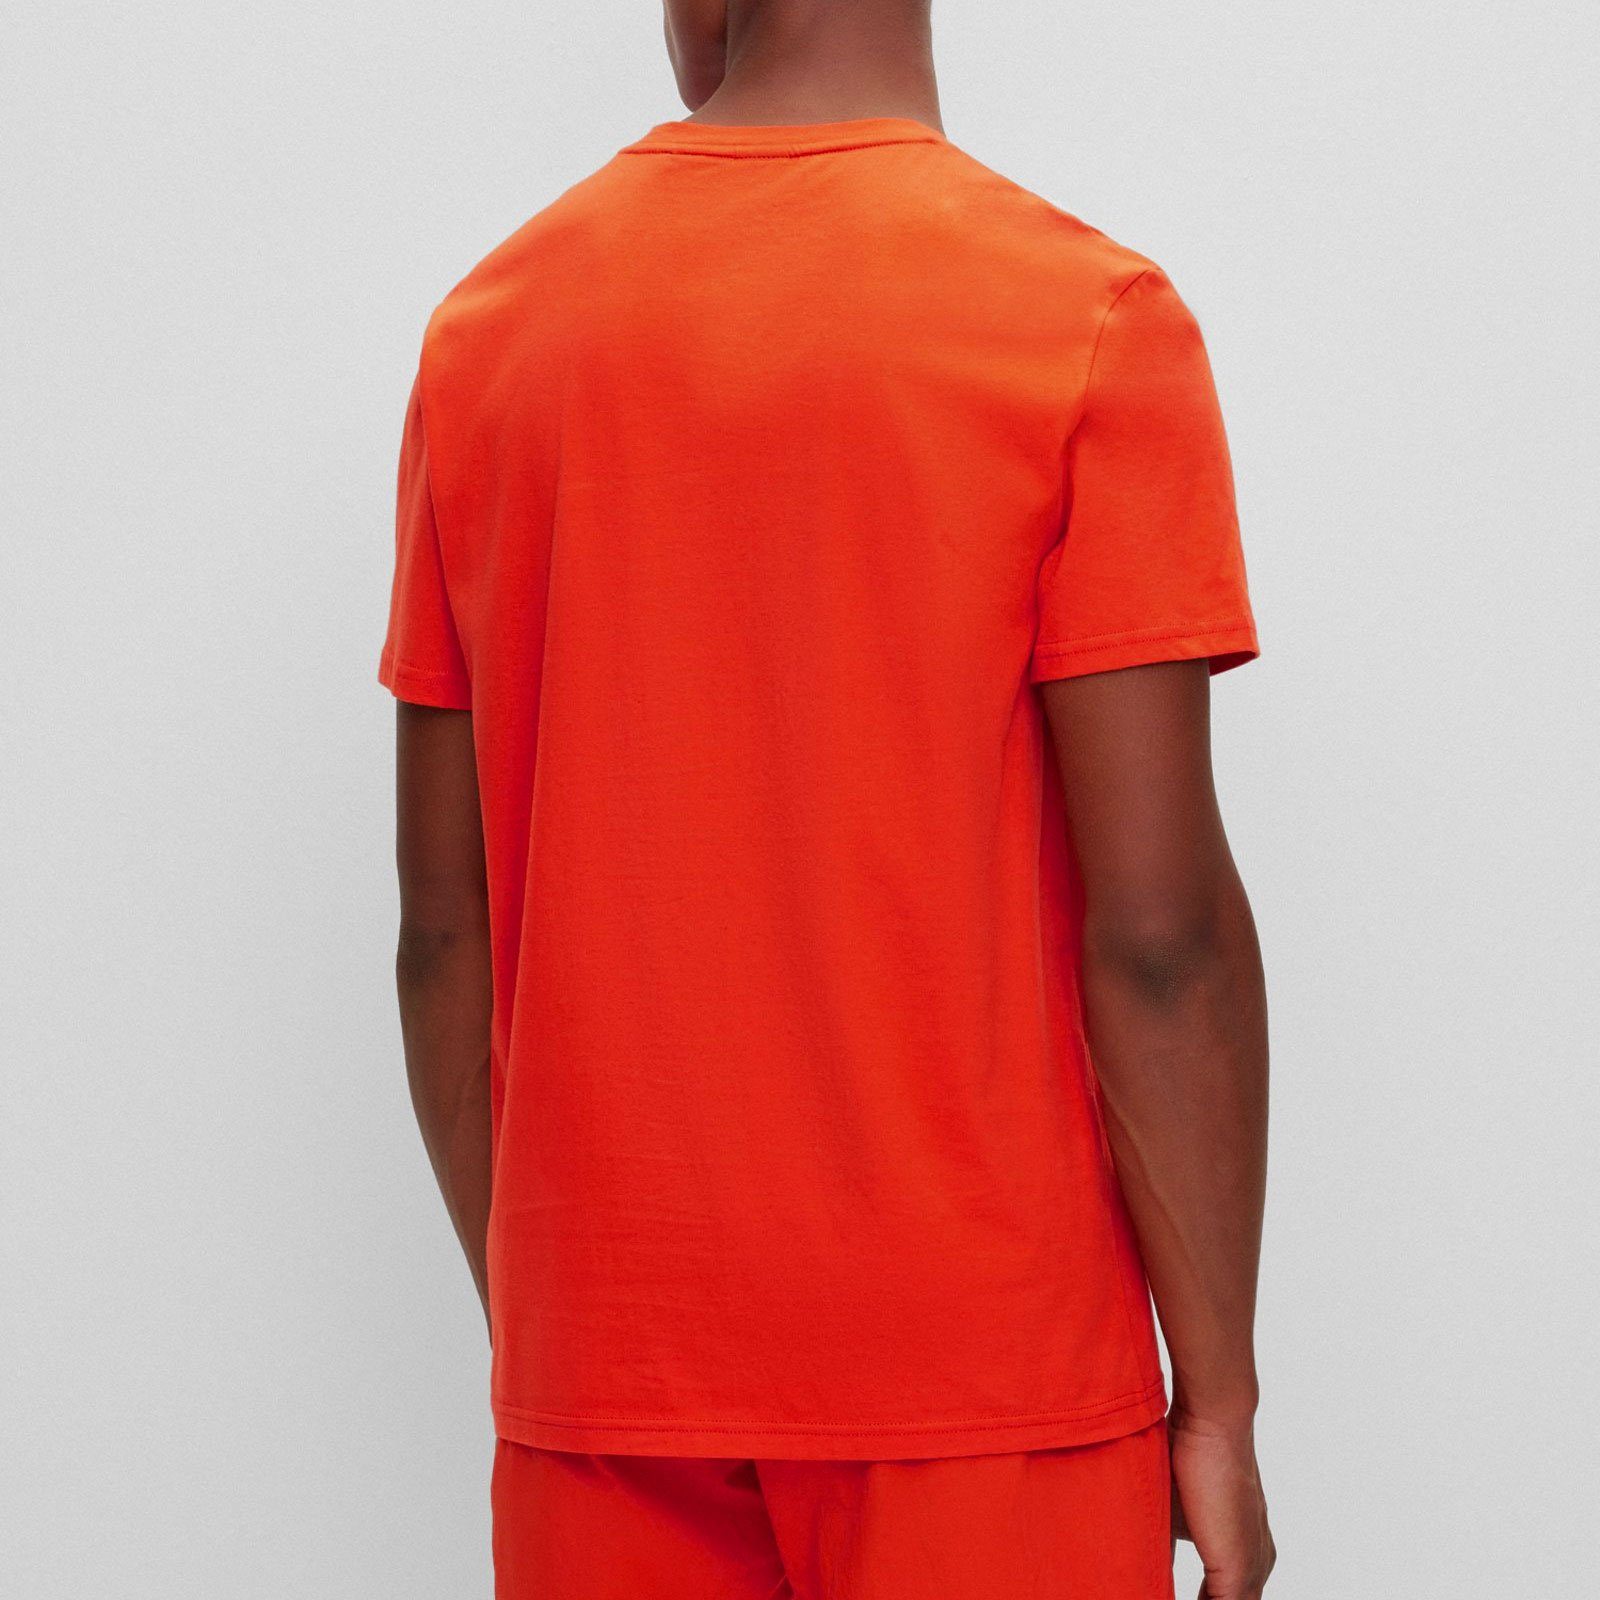 der bright T-Shirt 821 RN Brust auf BOSS großem orange T-Shirt mit Markenprint